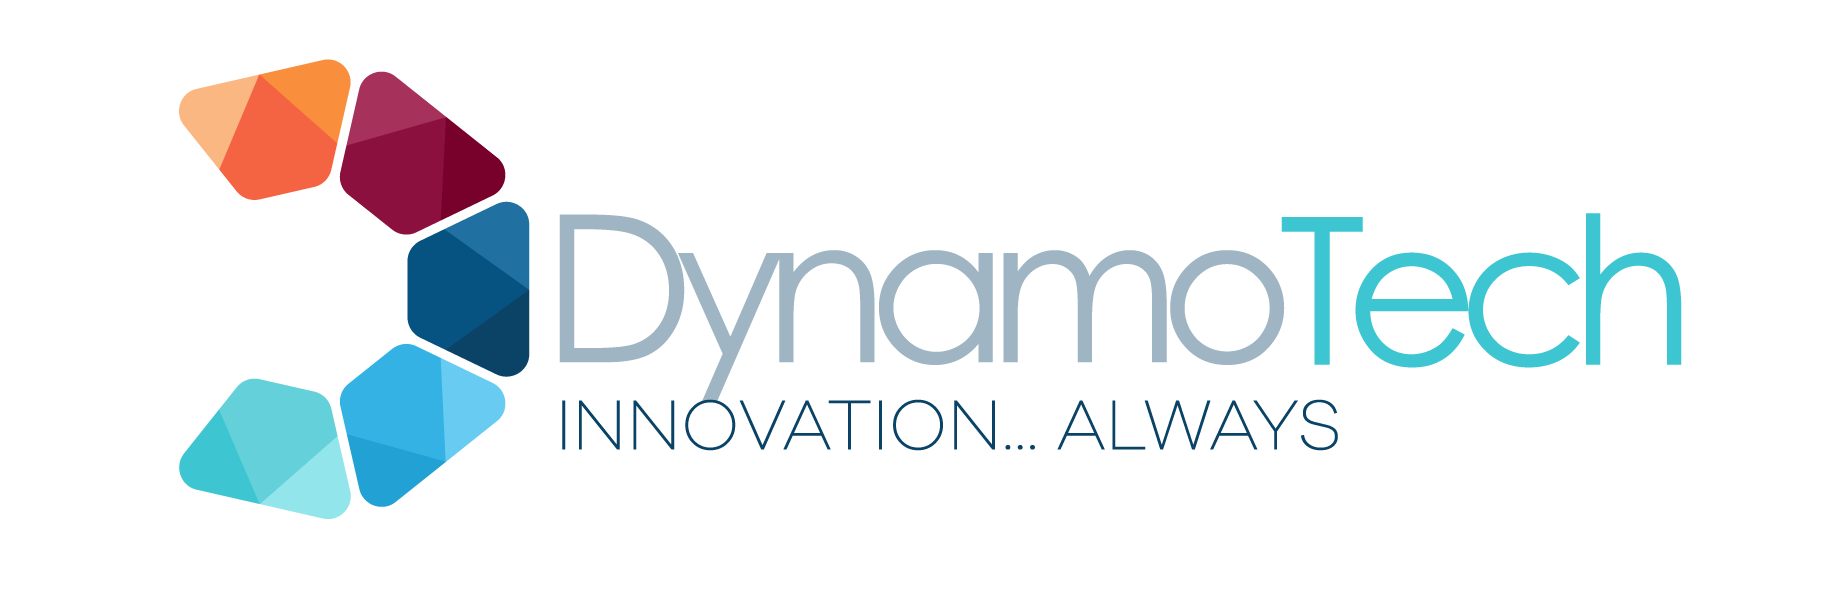 Desenvolvdido por DynamoTech! Clique aqui e conheça a DynamoTech.